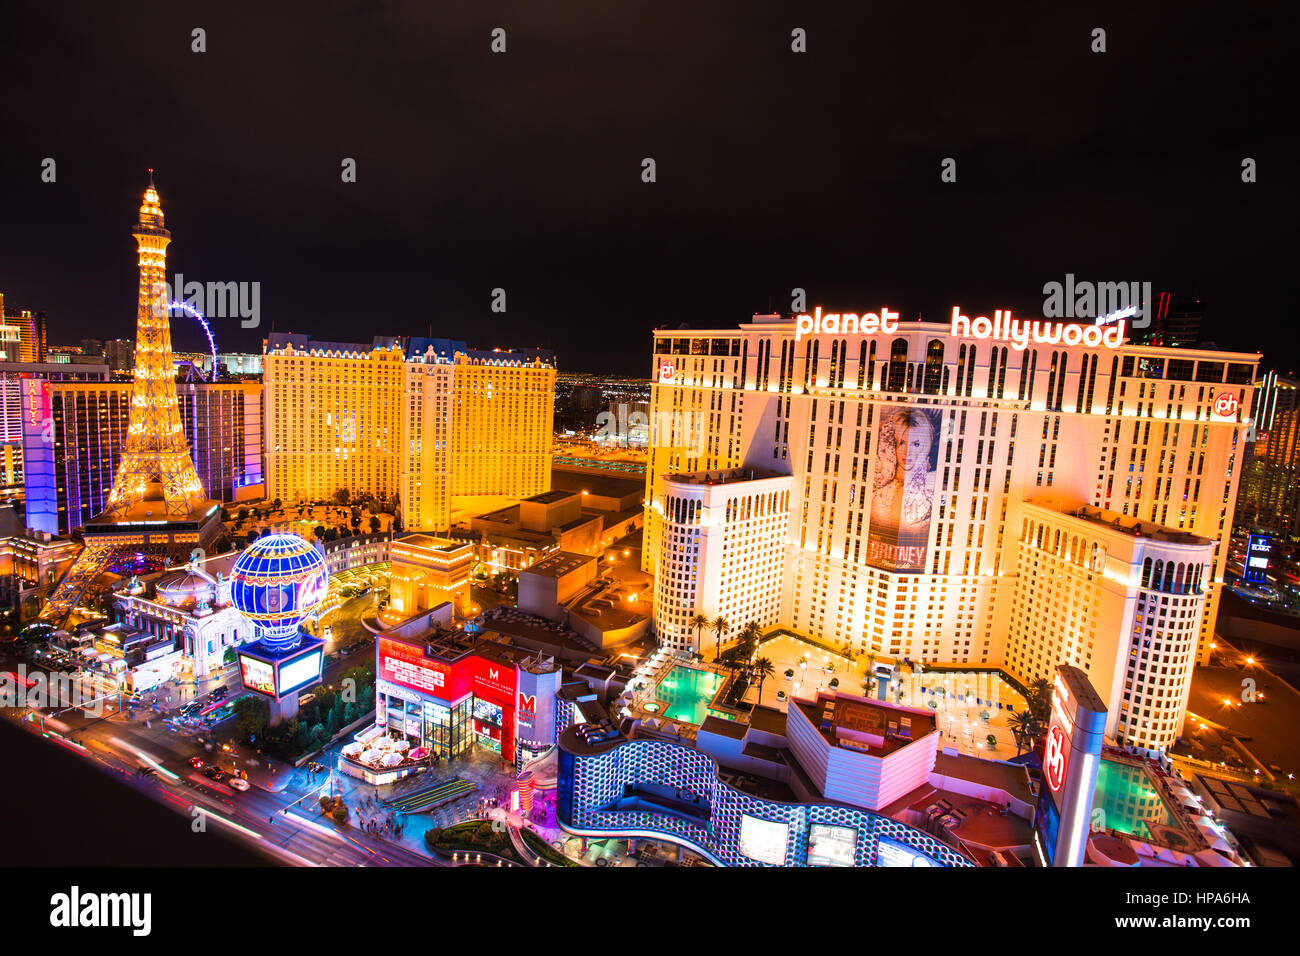 Come LAS VEGAS, NEVADA - 7 Maggio 2014: bella vista notturna della Strip di Las Vegas con colorati casinò resort illuminato. Foto Stock